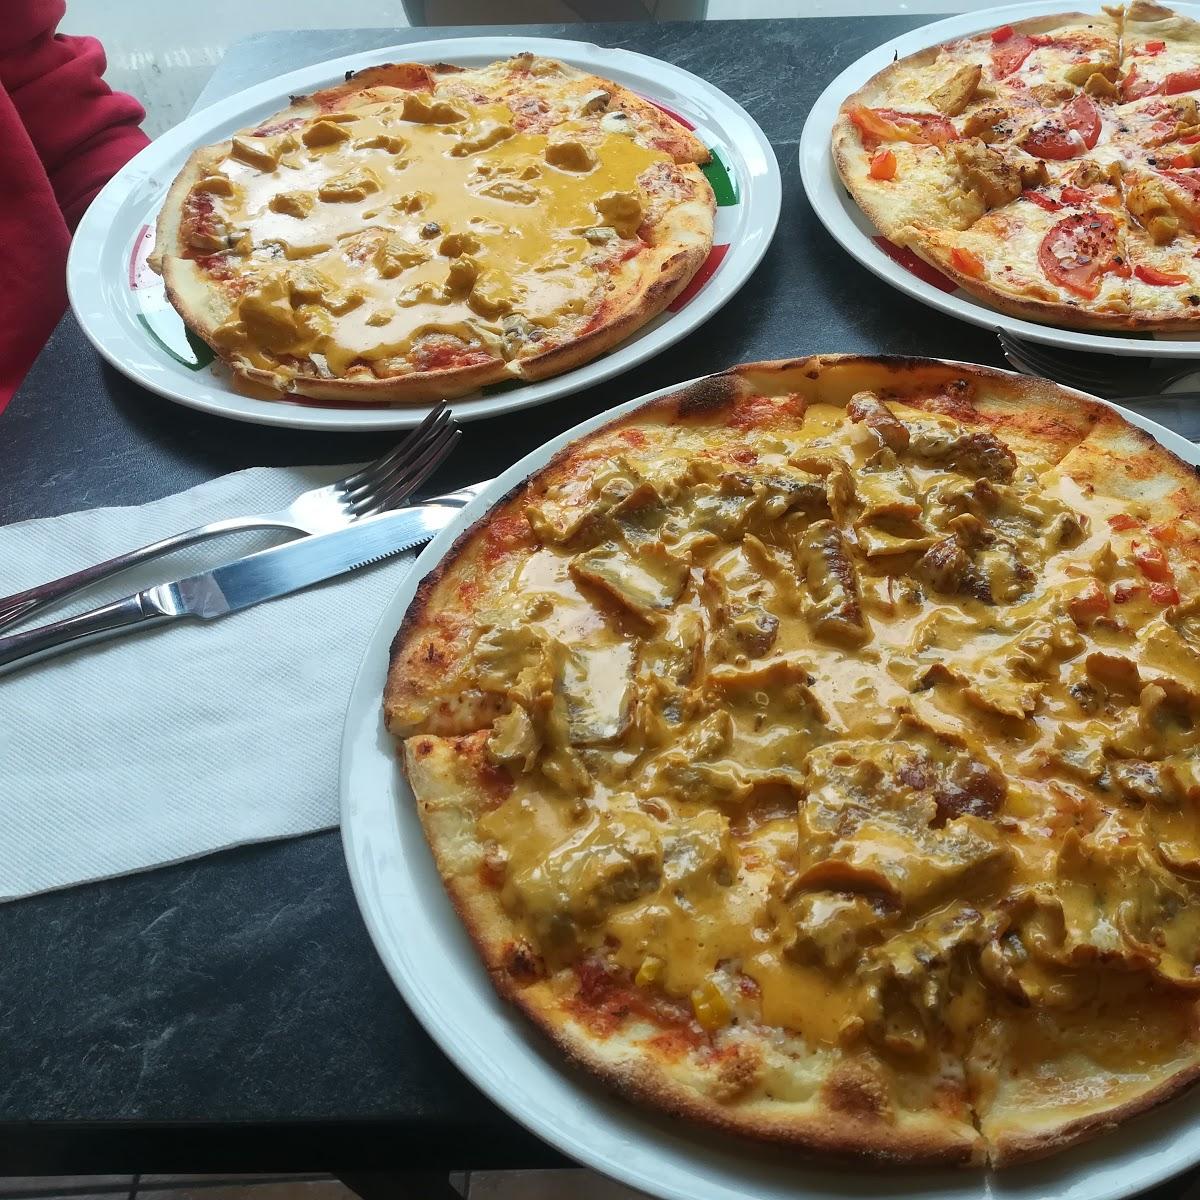 Restaurant "Pizza-Service Pinocchio" in Waldbröl